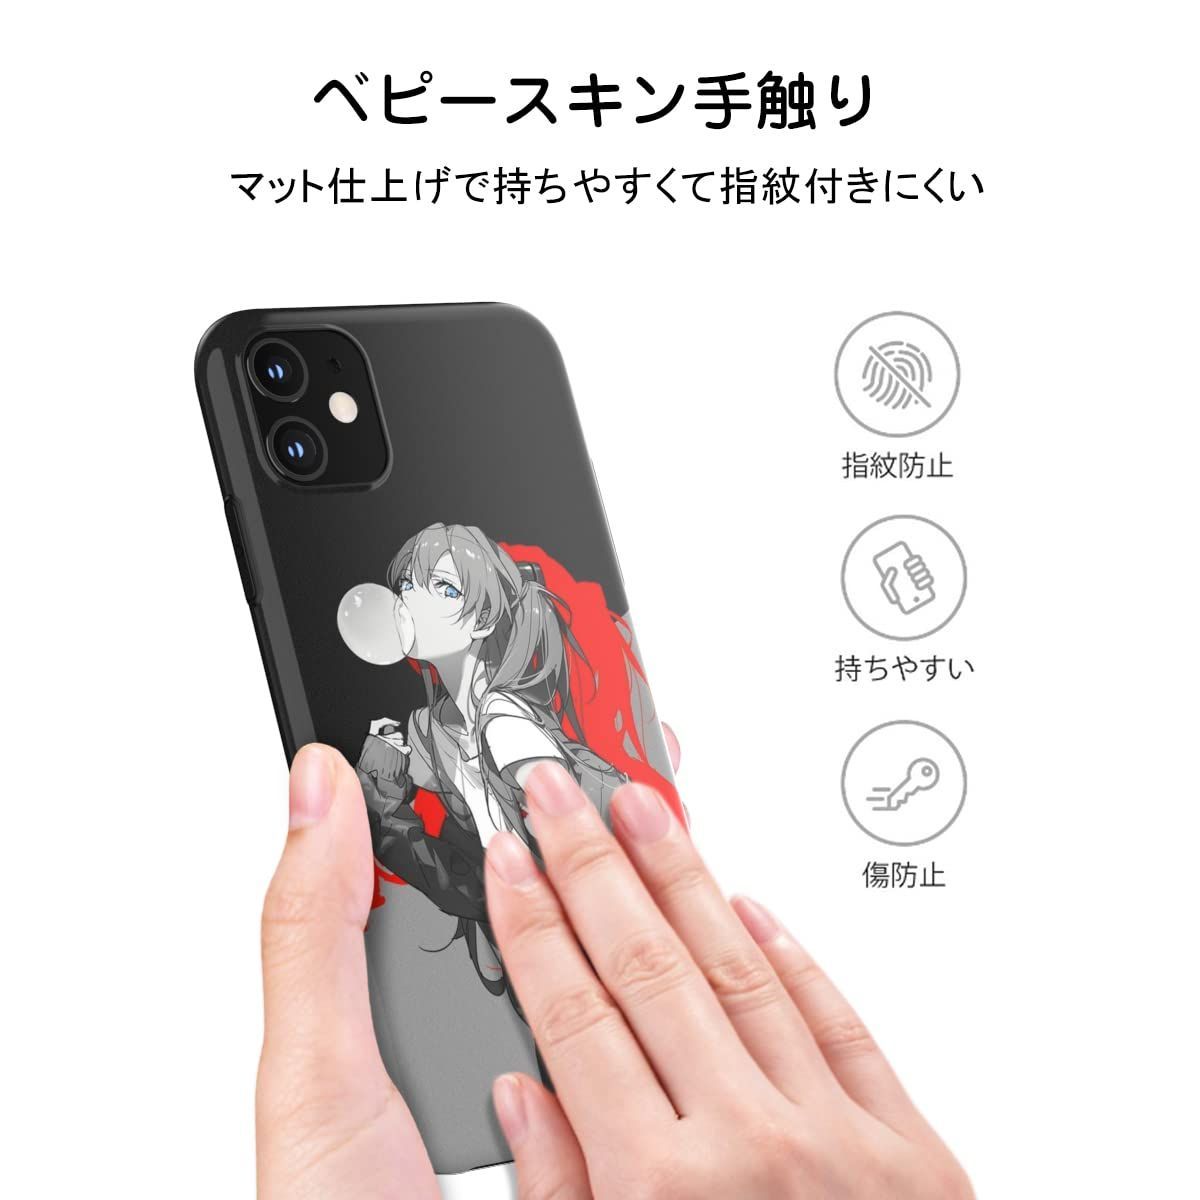 THE DREAMY LIFT iphone 11 ケース アニメ 漫画 eva あすか かわいい かっこいい 綺麗 萌え 人気 グッズ スマホケース (iphone 11（6.1インチ）)